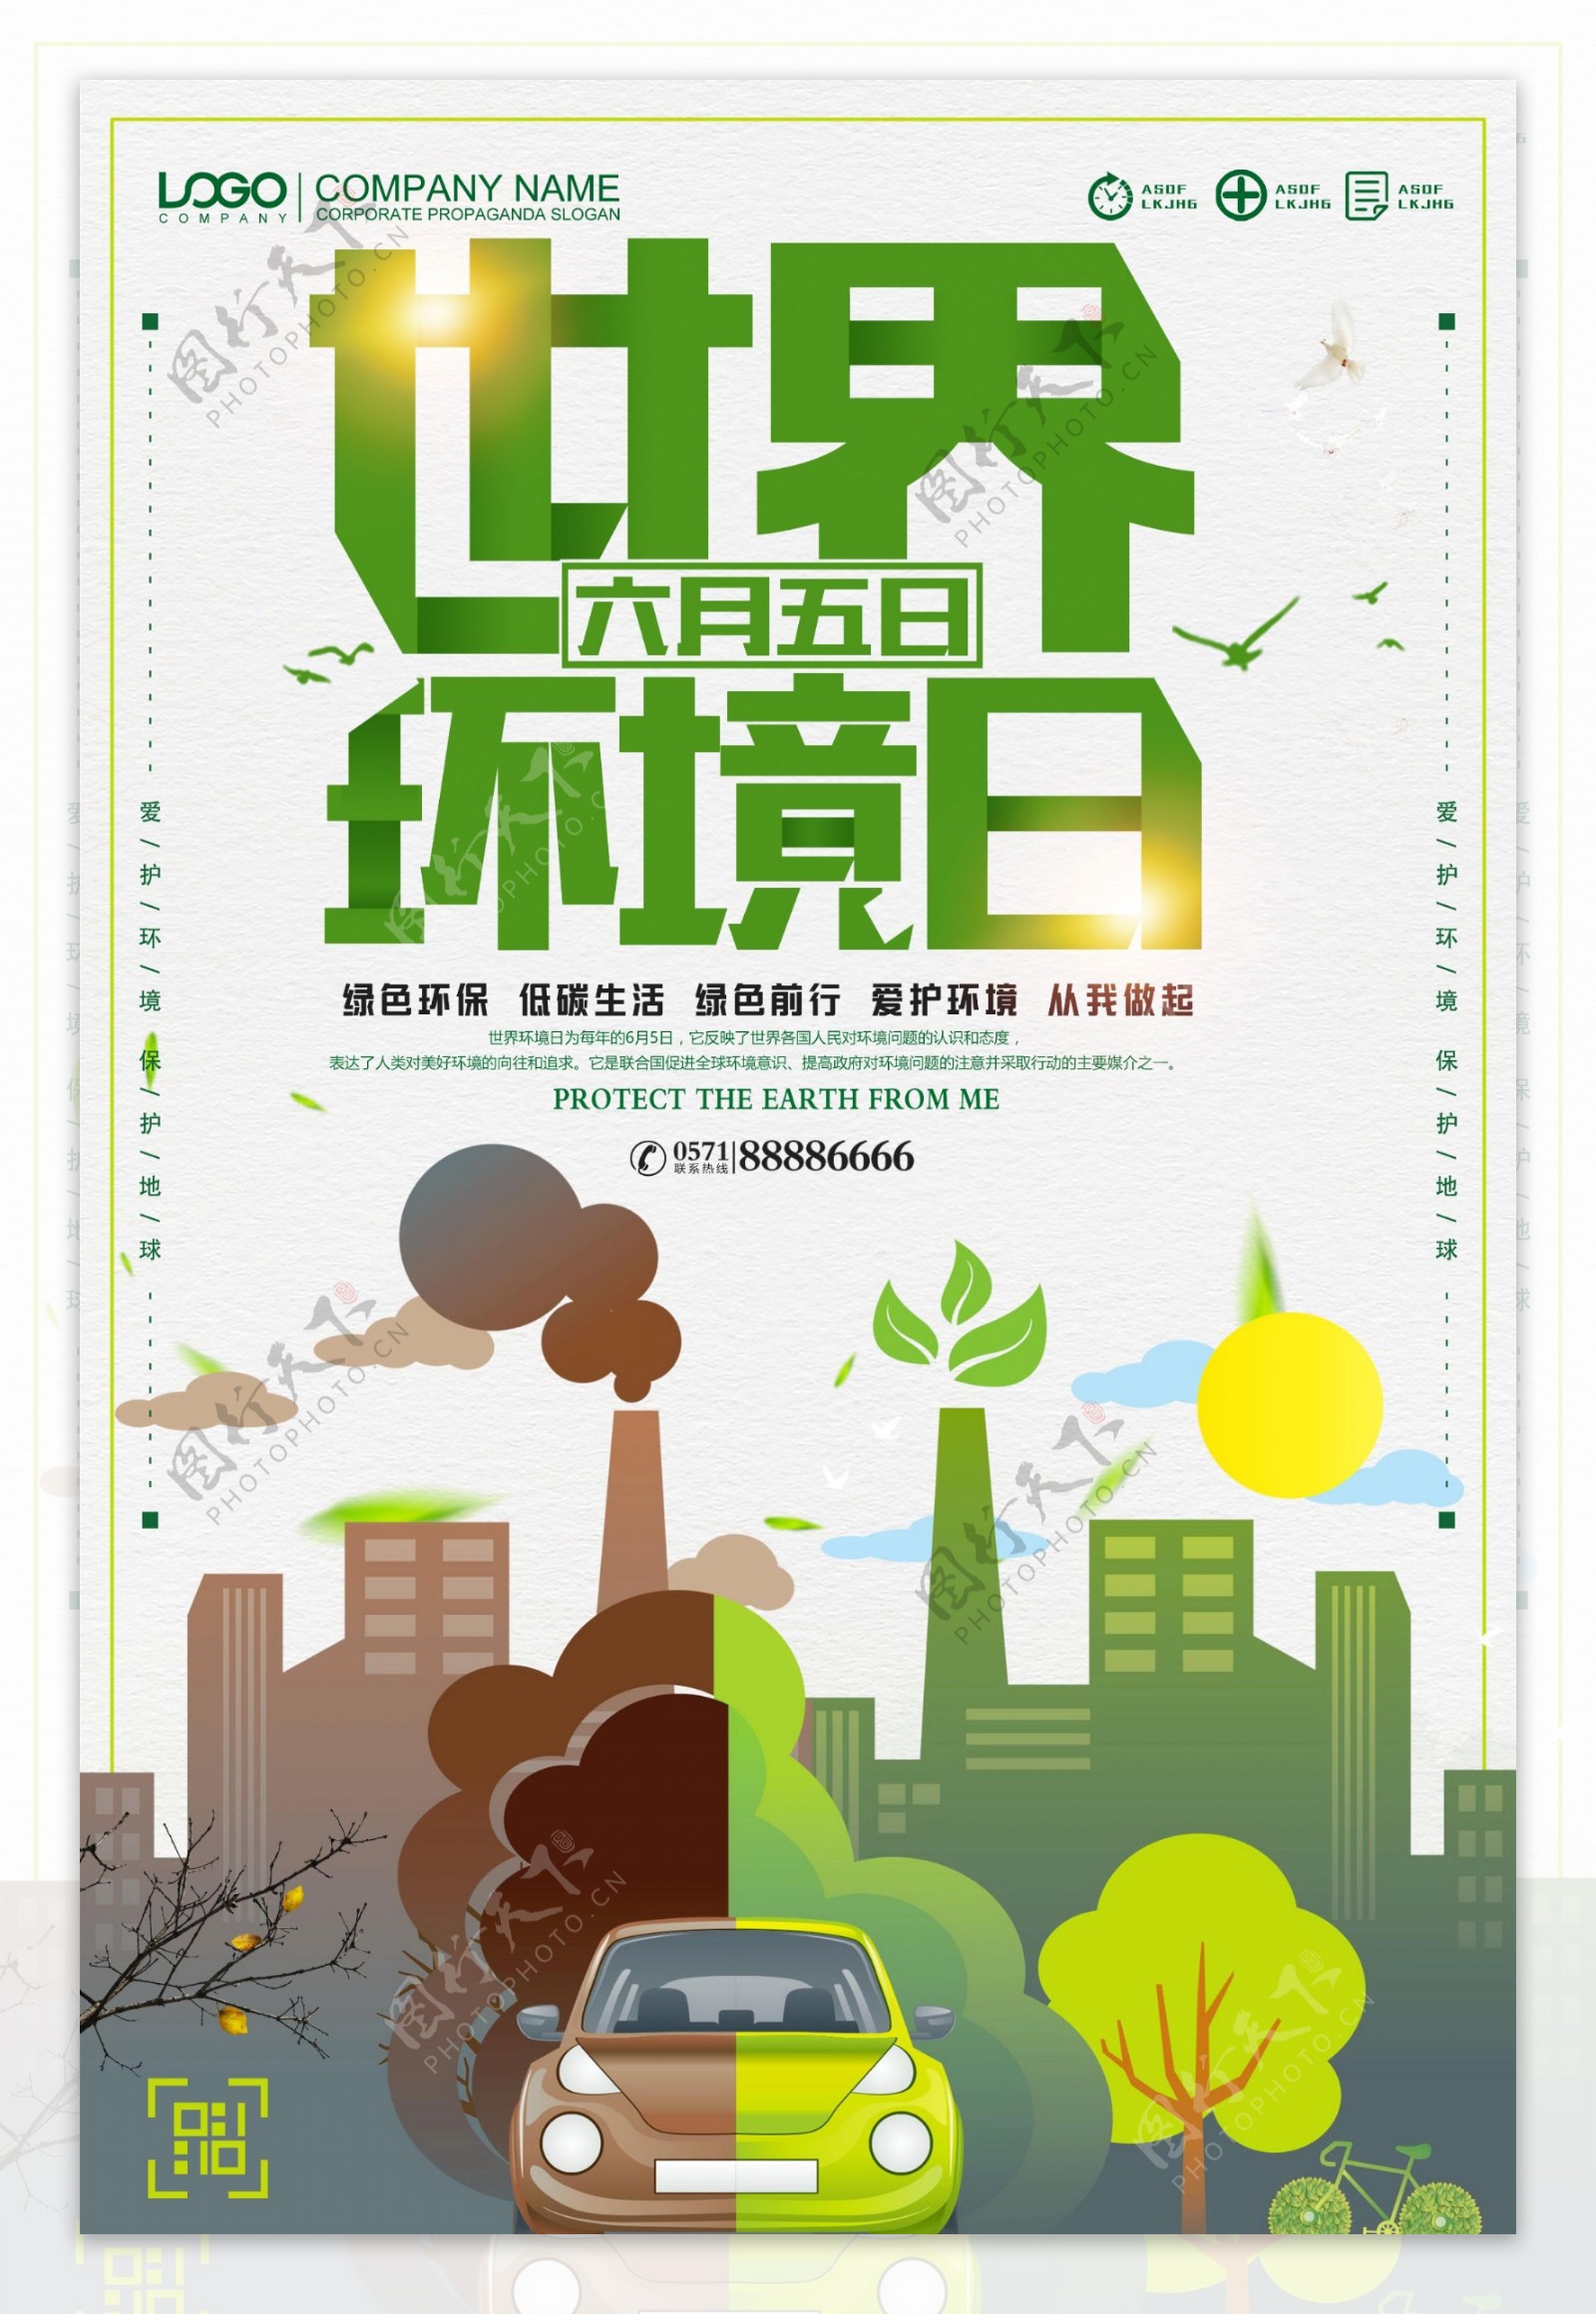 65世界环境日环保主题海报